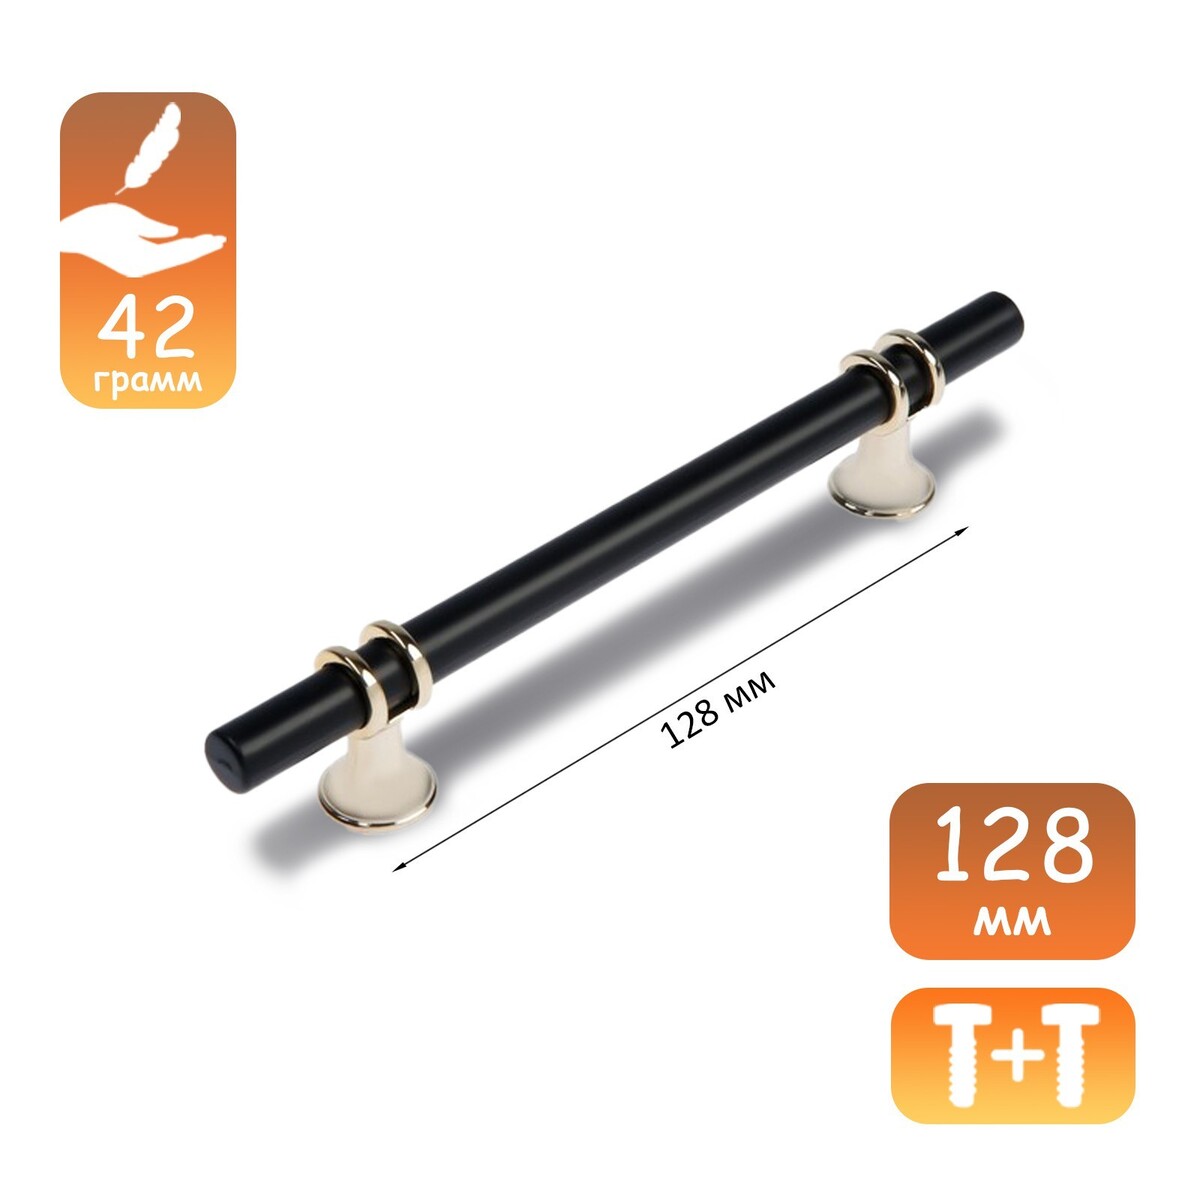 Ручка скоба cappio, м/о 128 мм, d=12 mm, пластик, цвет золото/черный ручка скоба cappio rc232 м о 320 темное золото